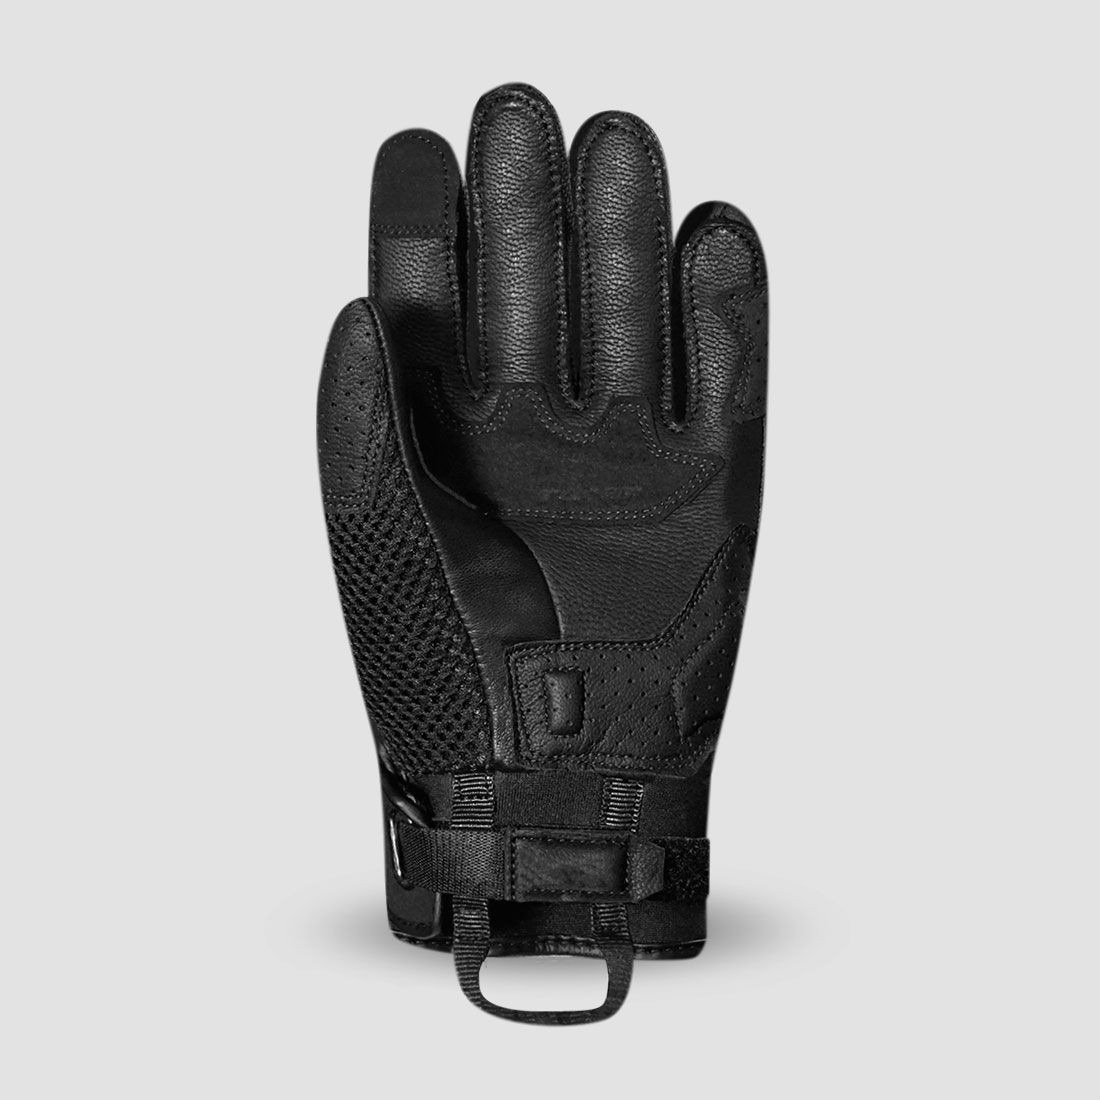 gloves RONIN, RACER (black)